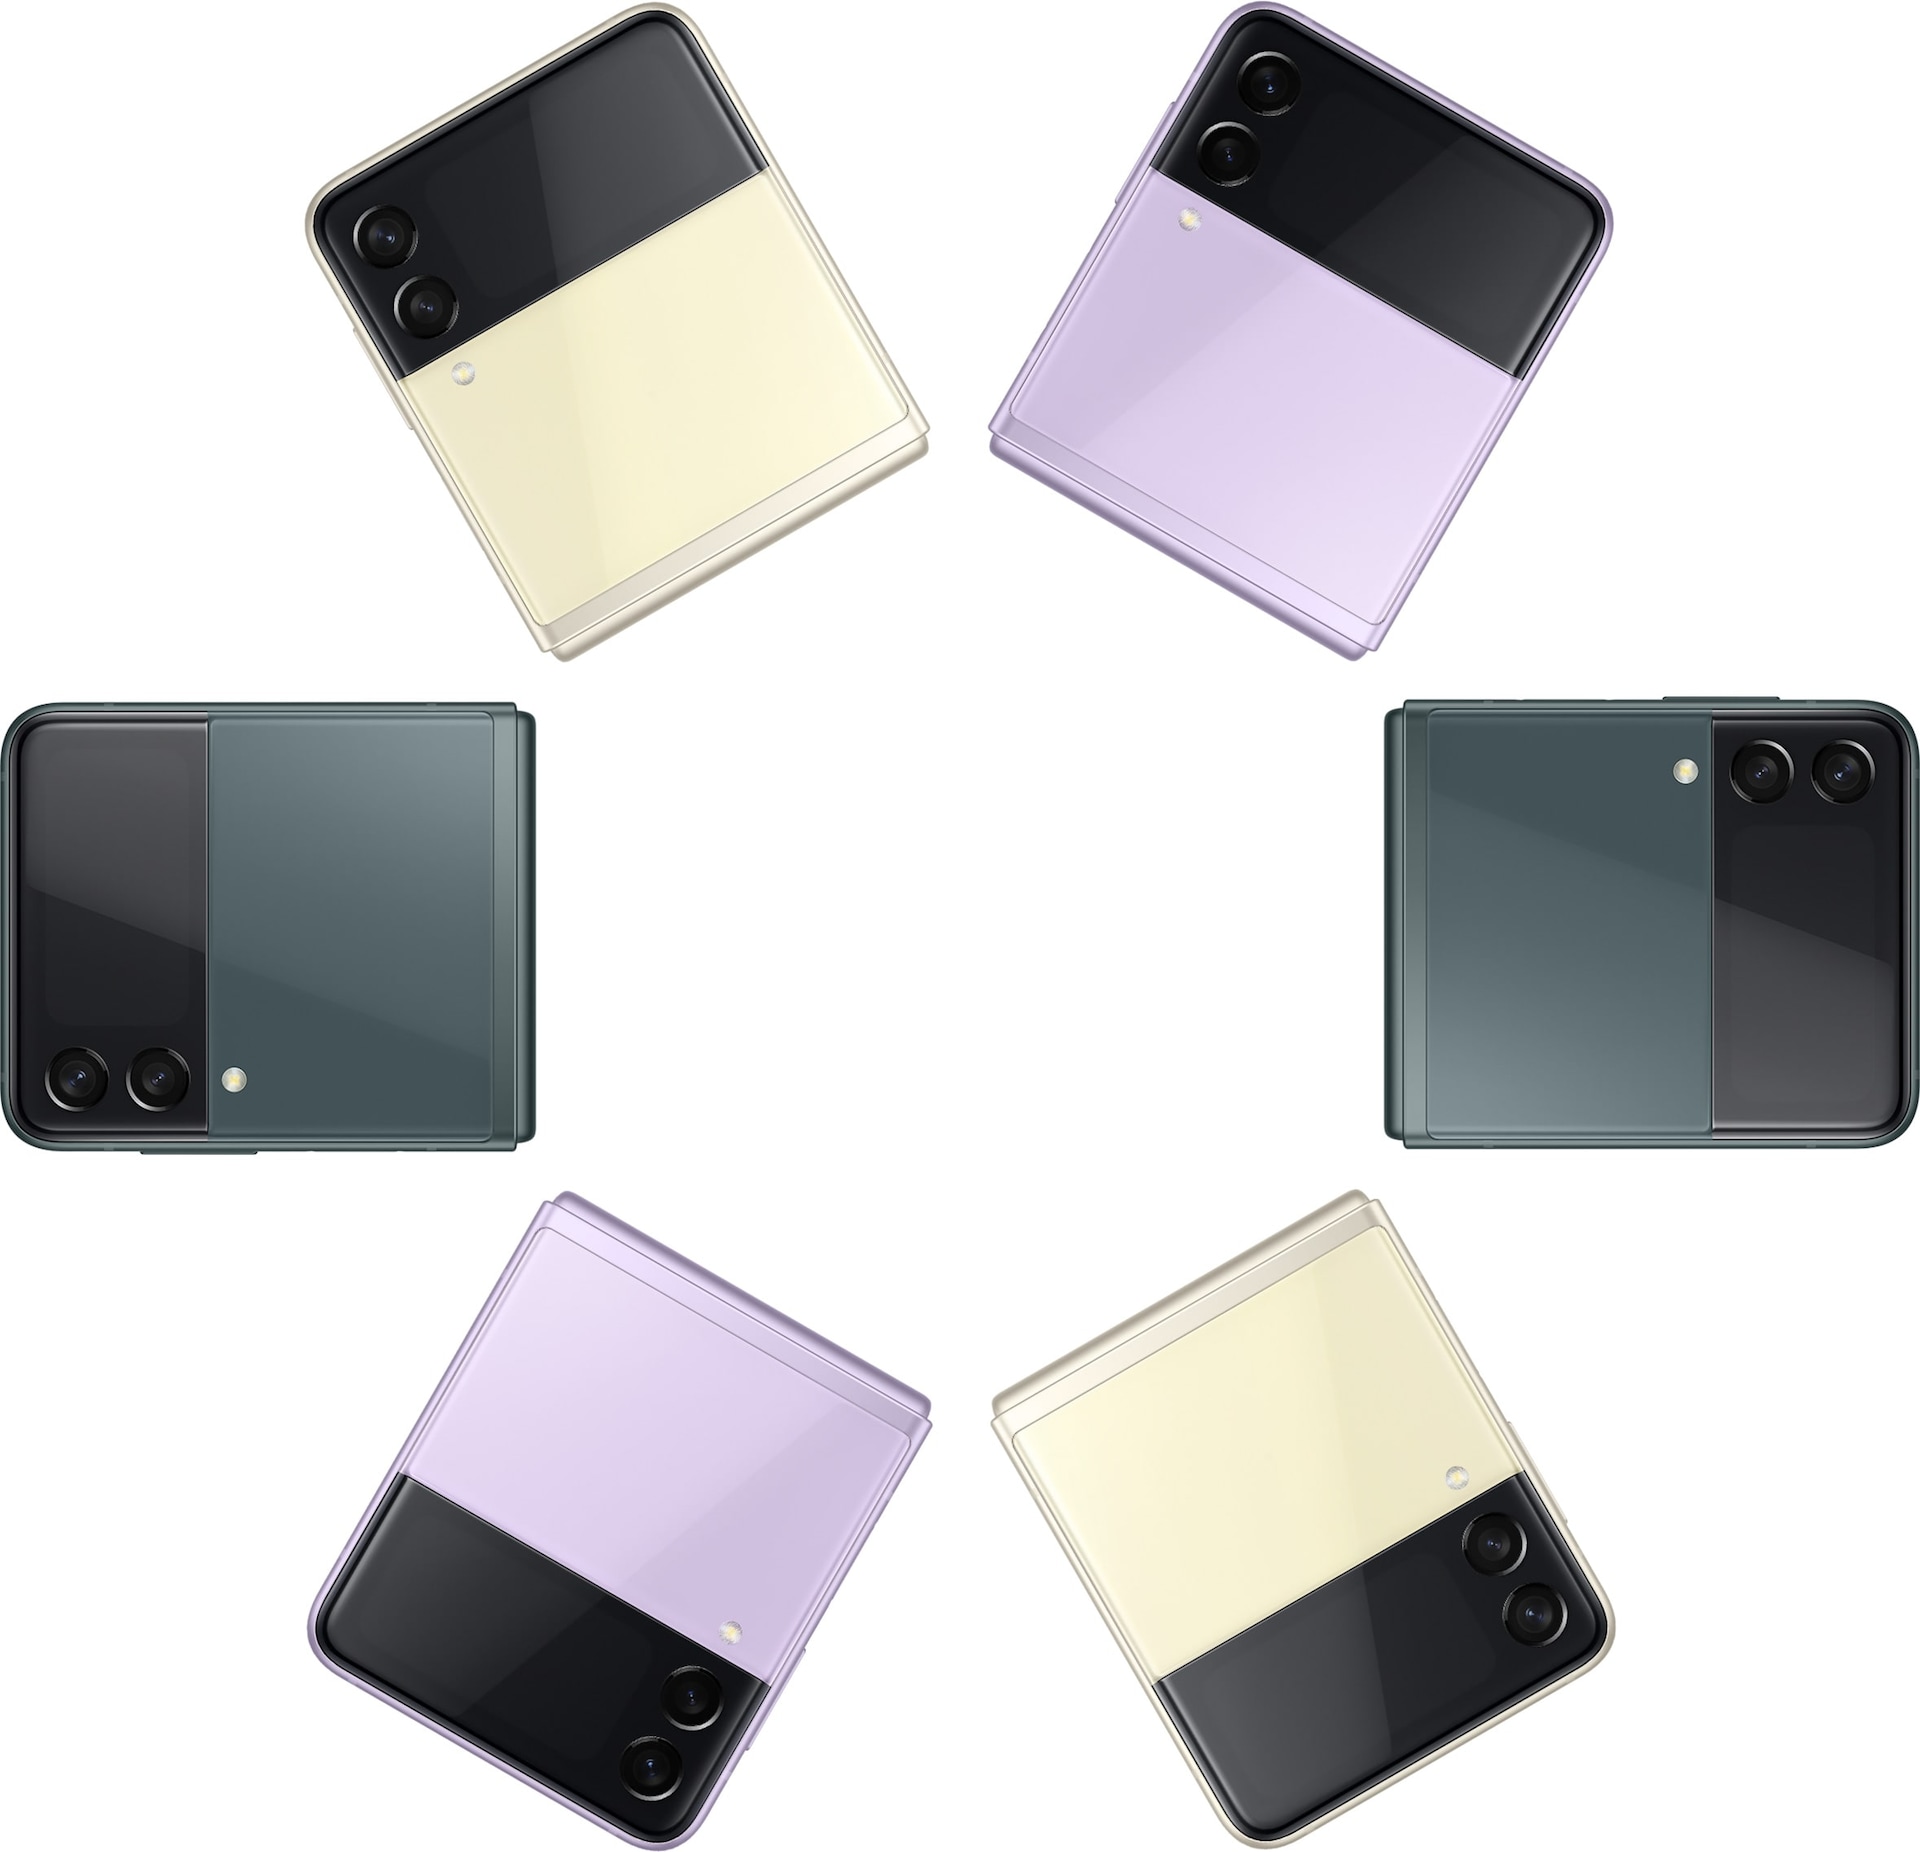 6 chiếc điện thoại Galaxy Z Flip3 5G, đều ở trạng thái gập và nhìn từ mặt trước. Hai chiếc màu Kem, hai chiếc màu Tím nhẹ và hai chiếc màu Xanh lá.